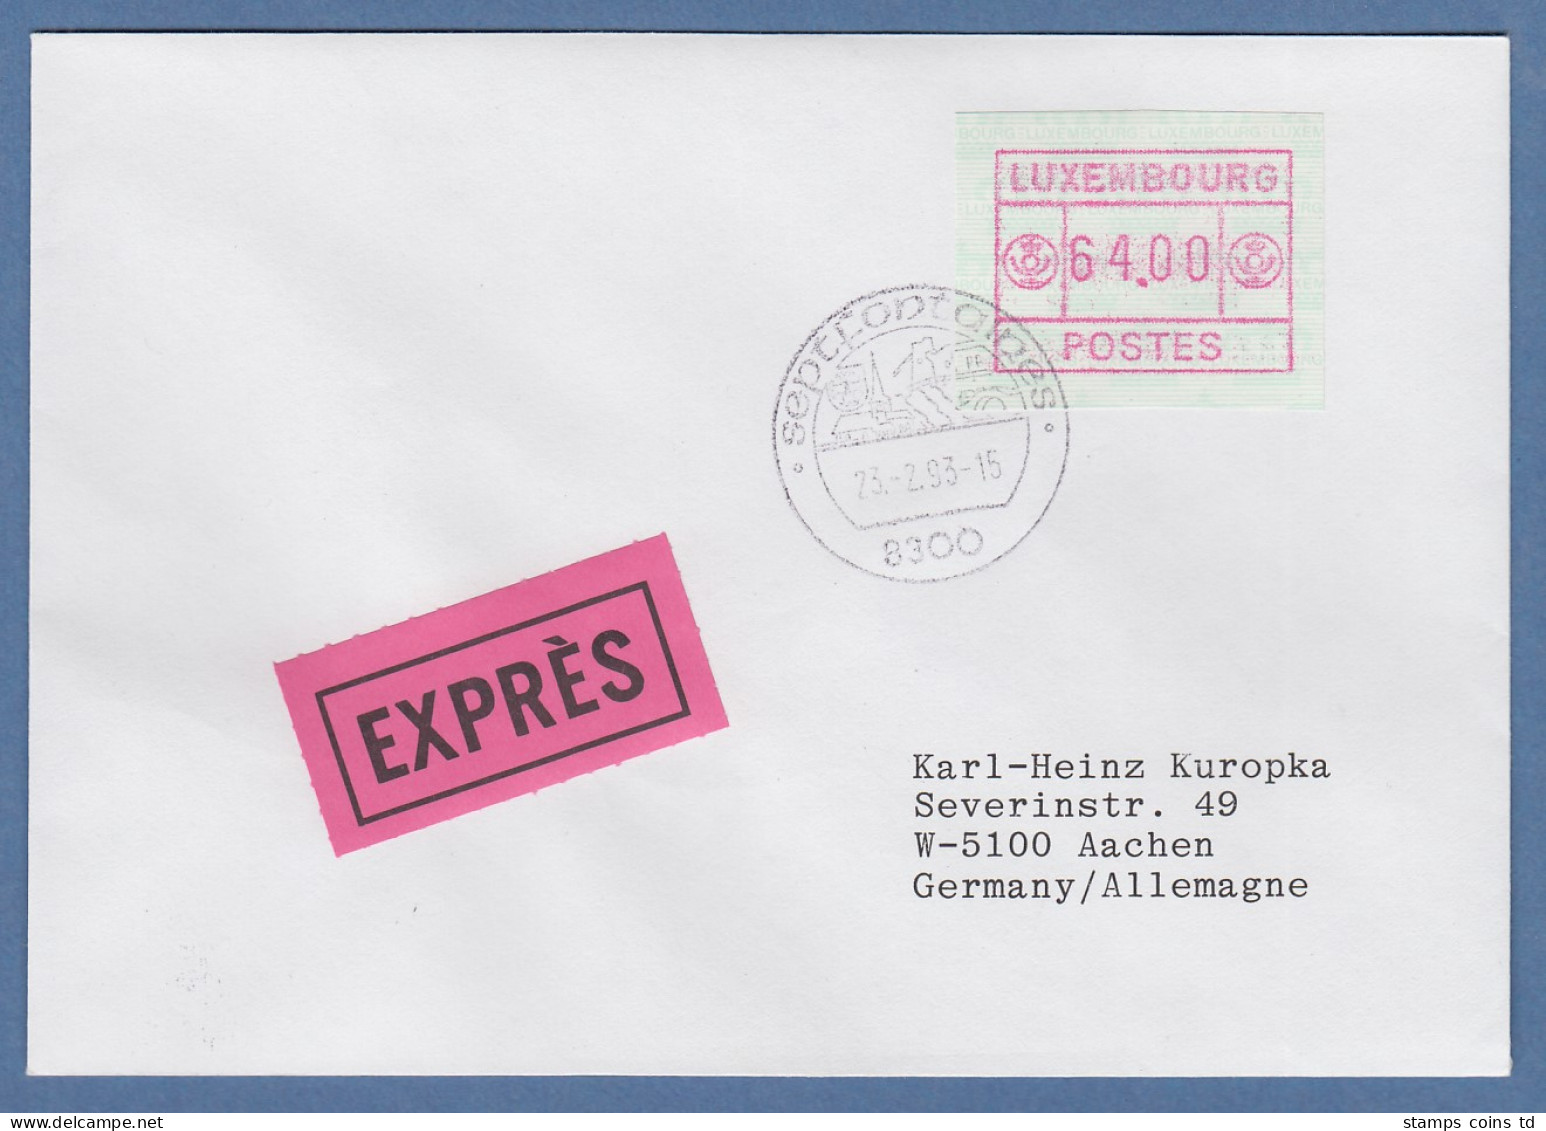 Luxemburg ATM Gr. POSTES Mi.-Nr. 3 Wert 64.00 Auf Express-Brief Nach Aachen - Vignettes D'affranchissement